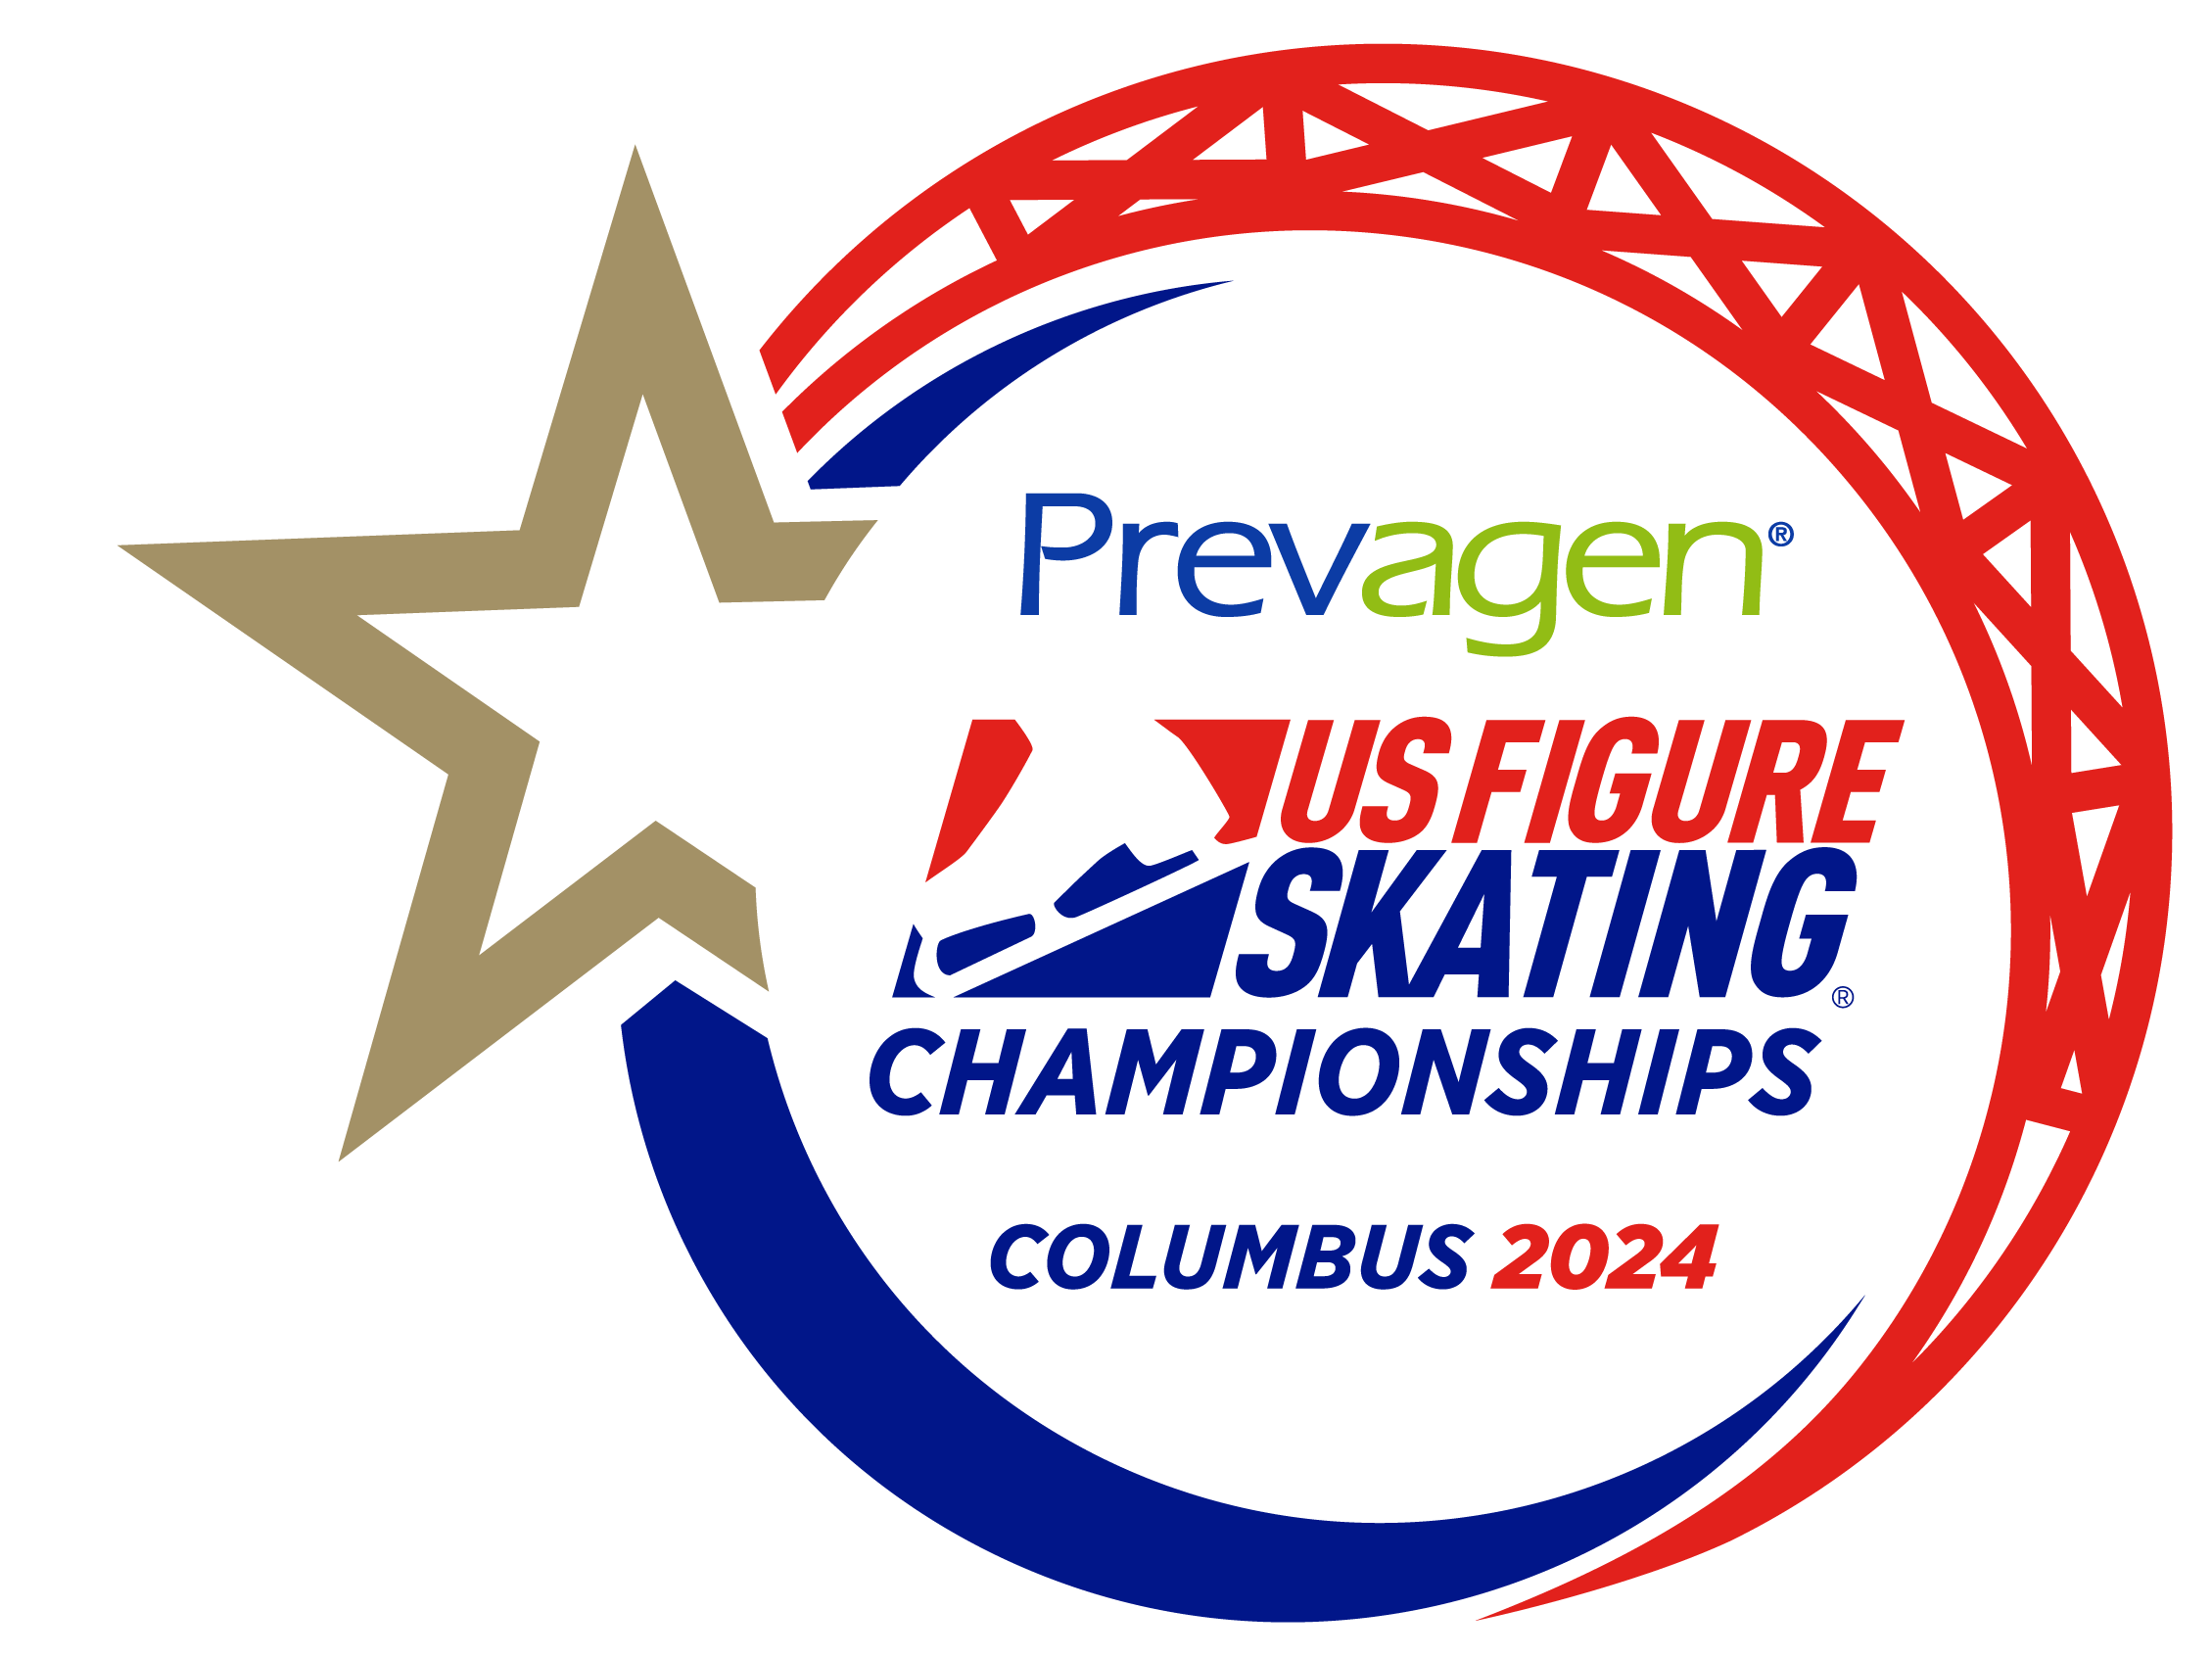 Prevagen Named Title Sponsor of 2024 U.S. Figure Skating Championships